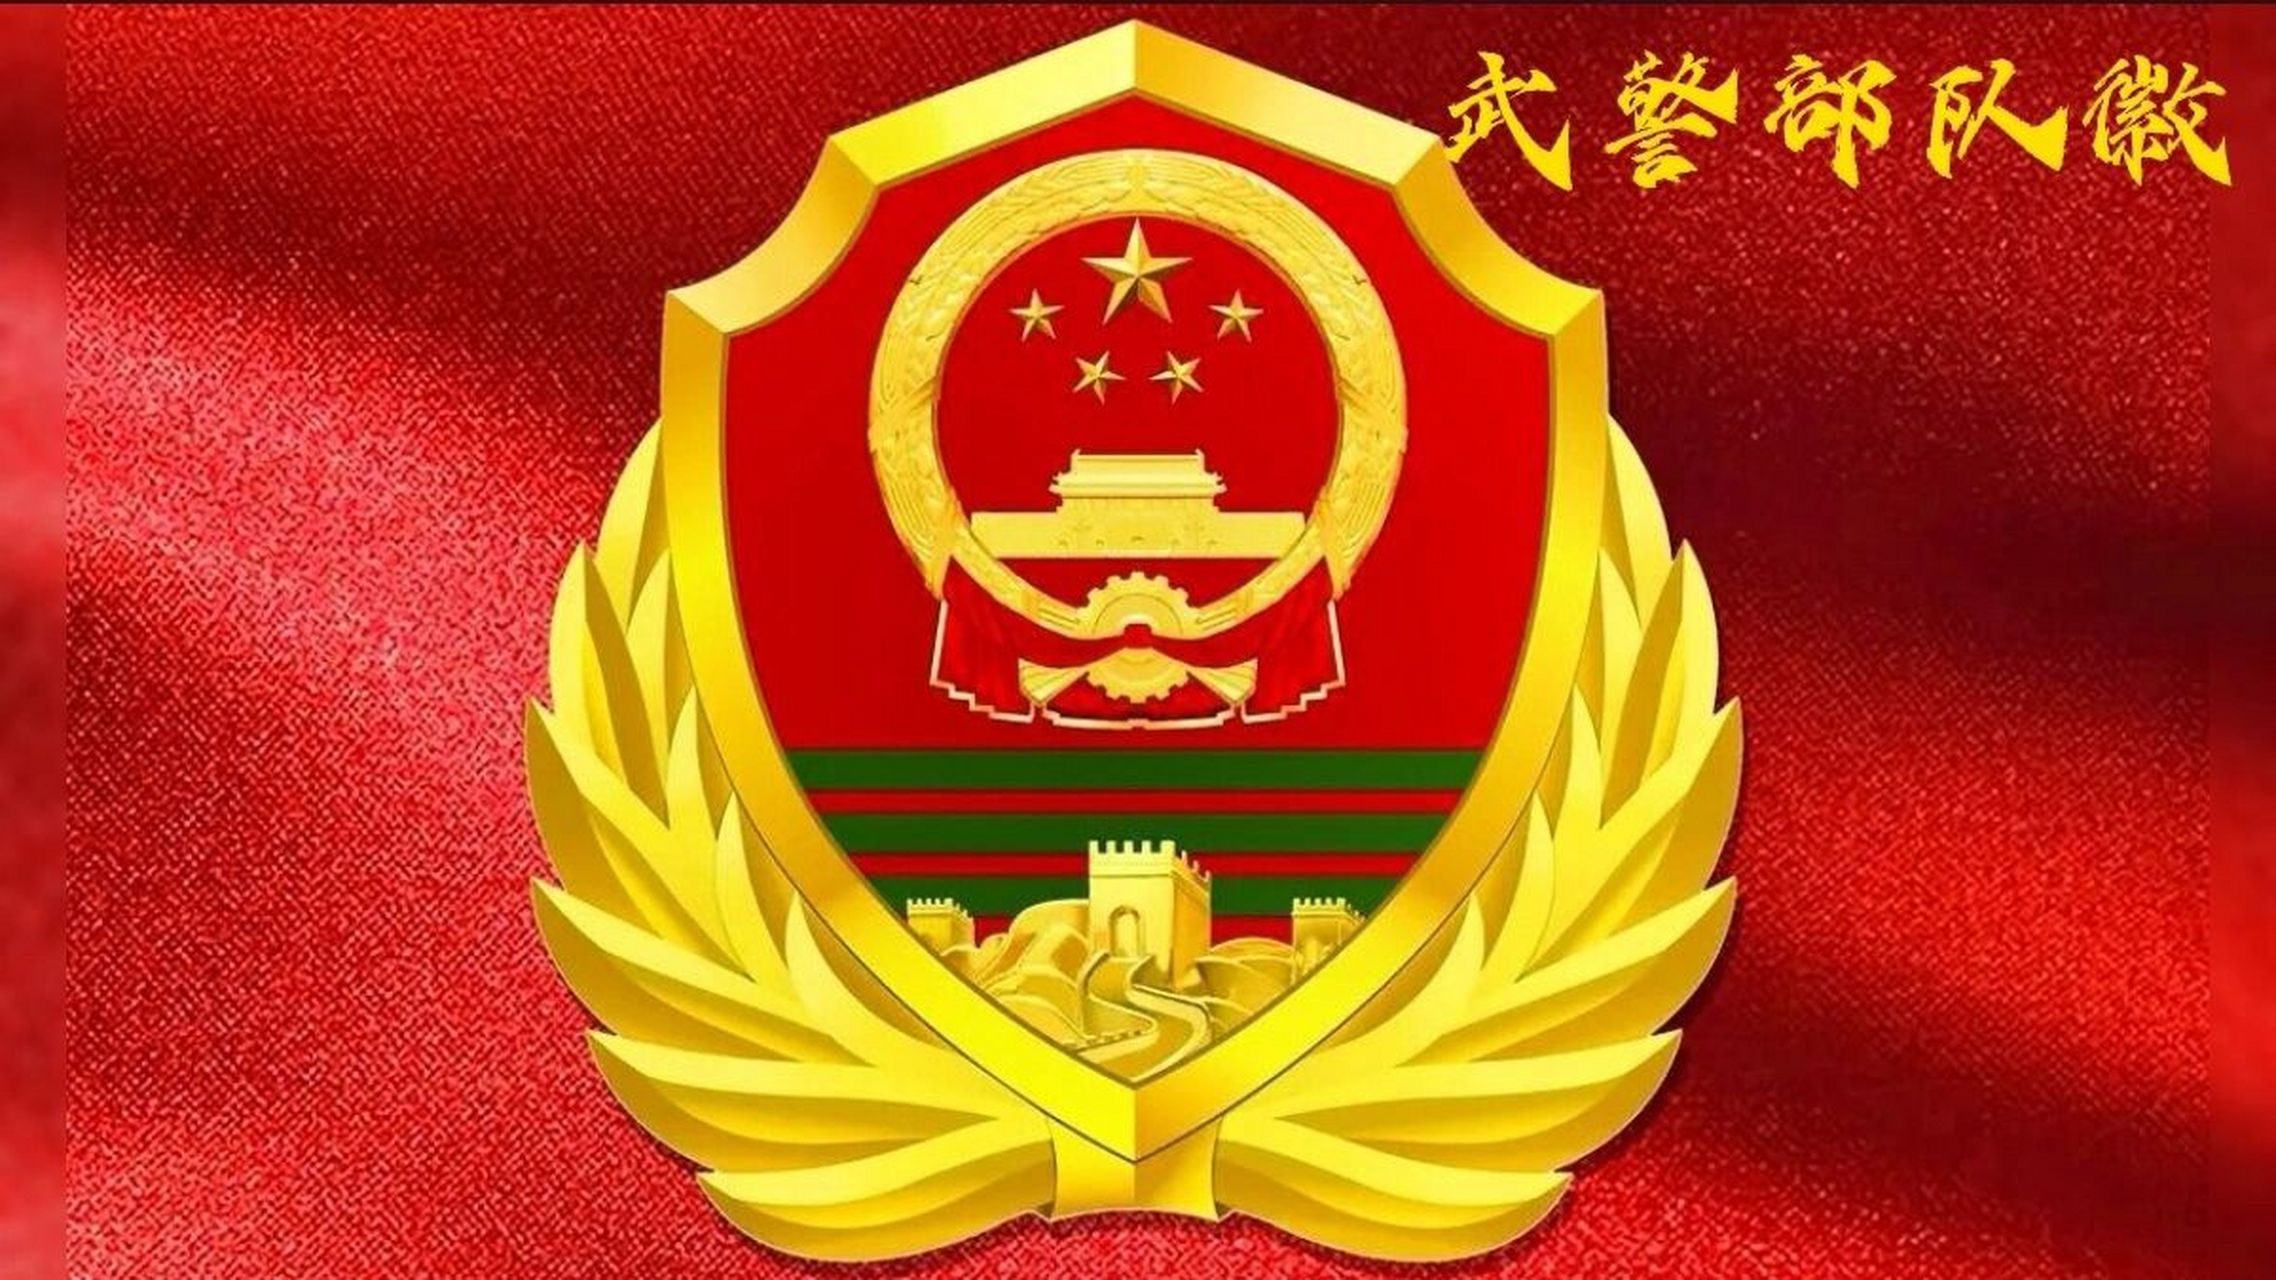 中国武警字体图片图片